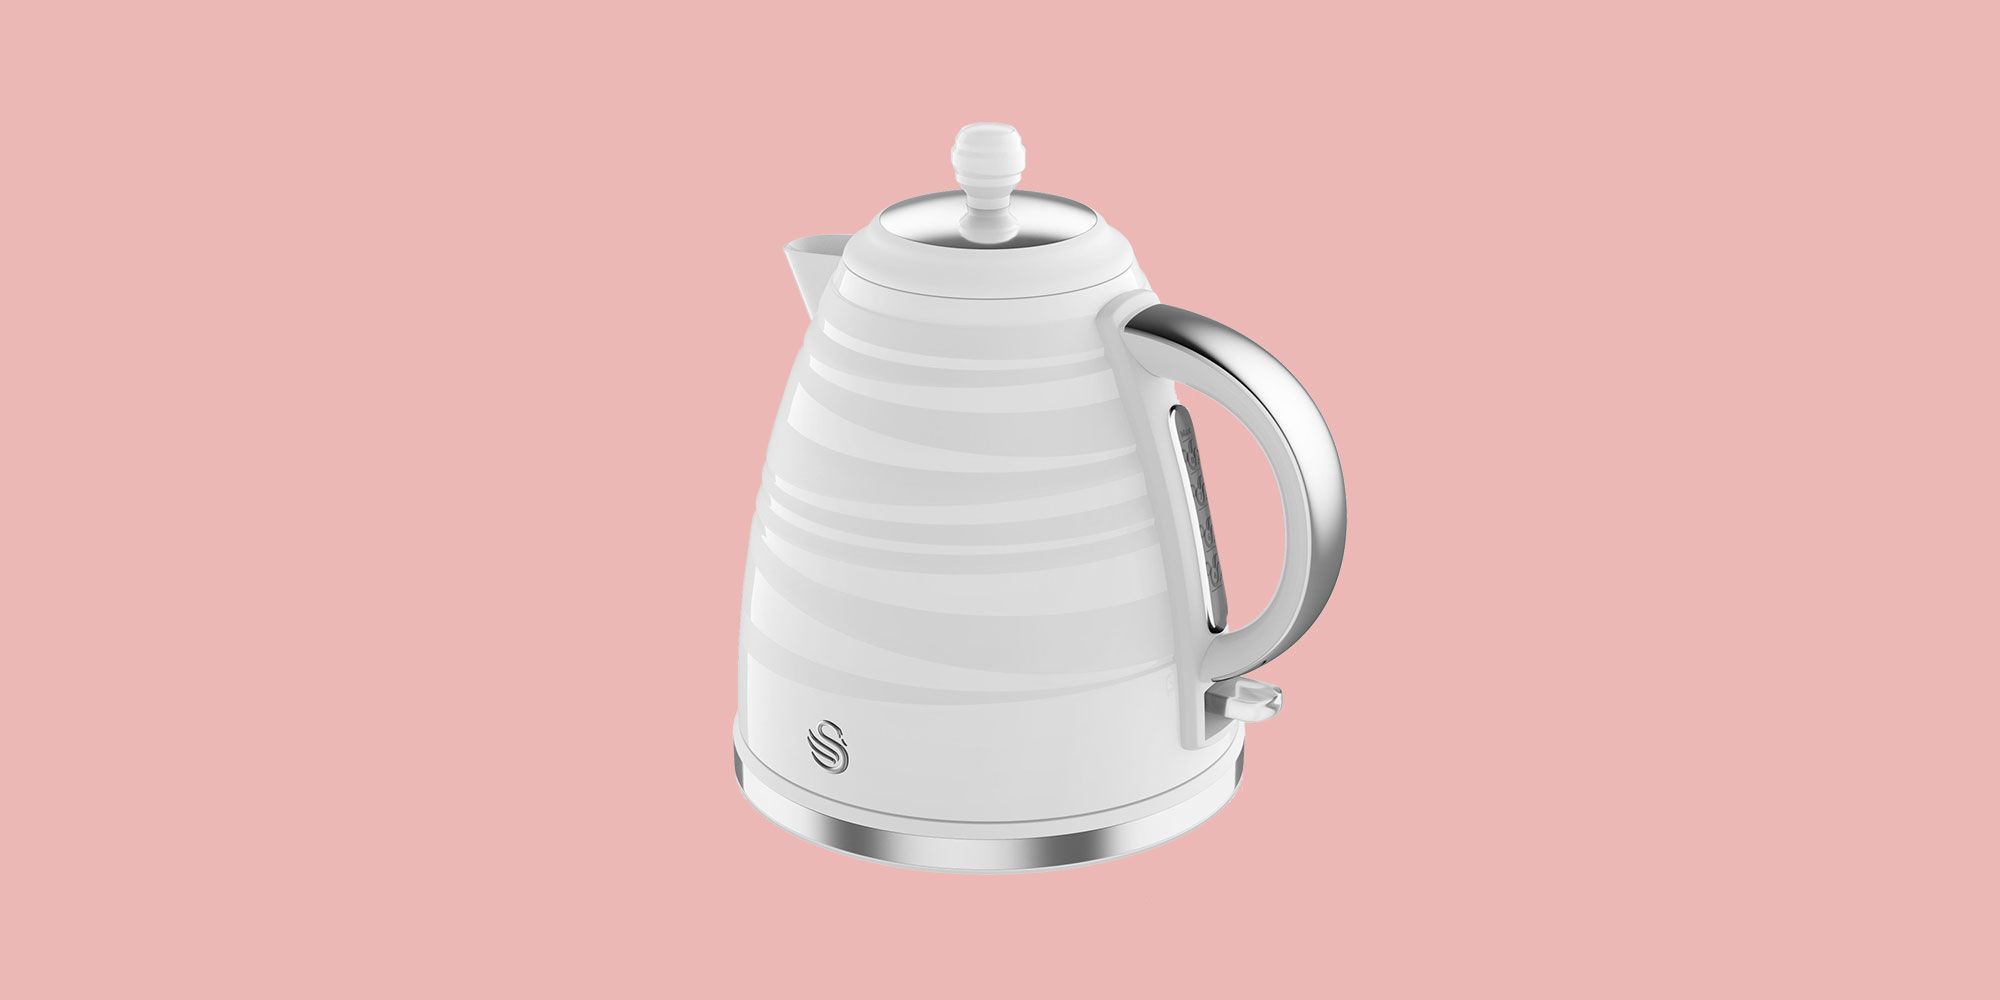 Best kettles to buy in 2024 UK